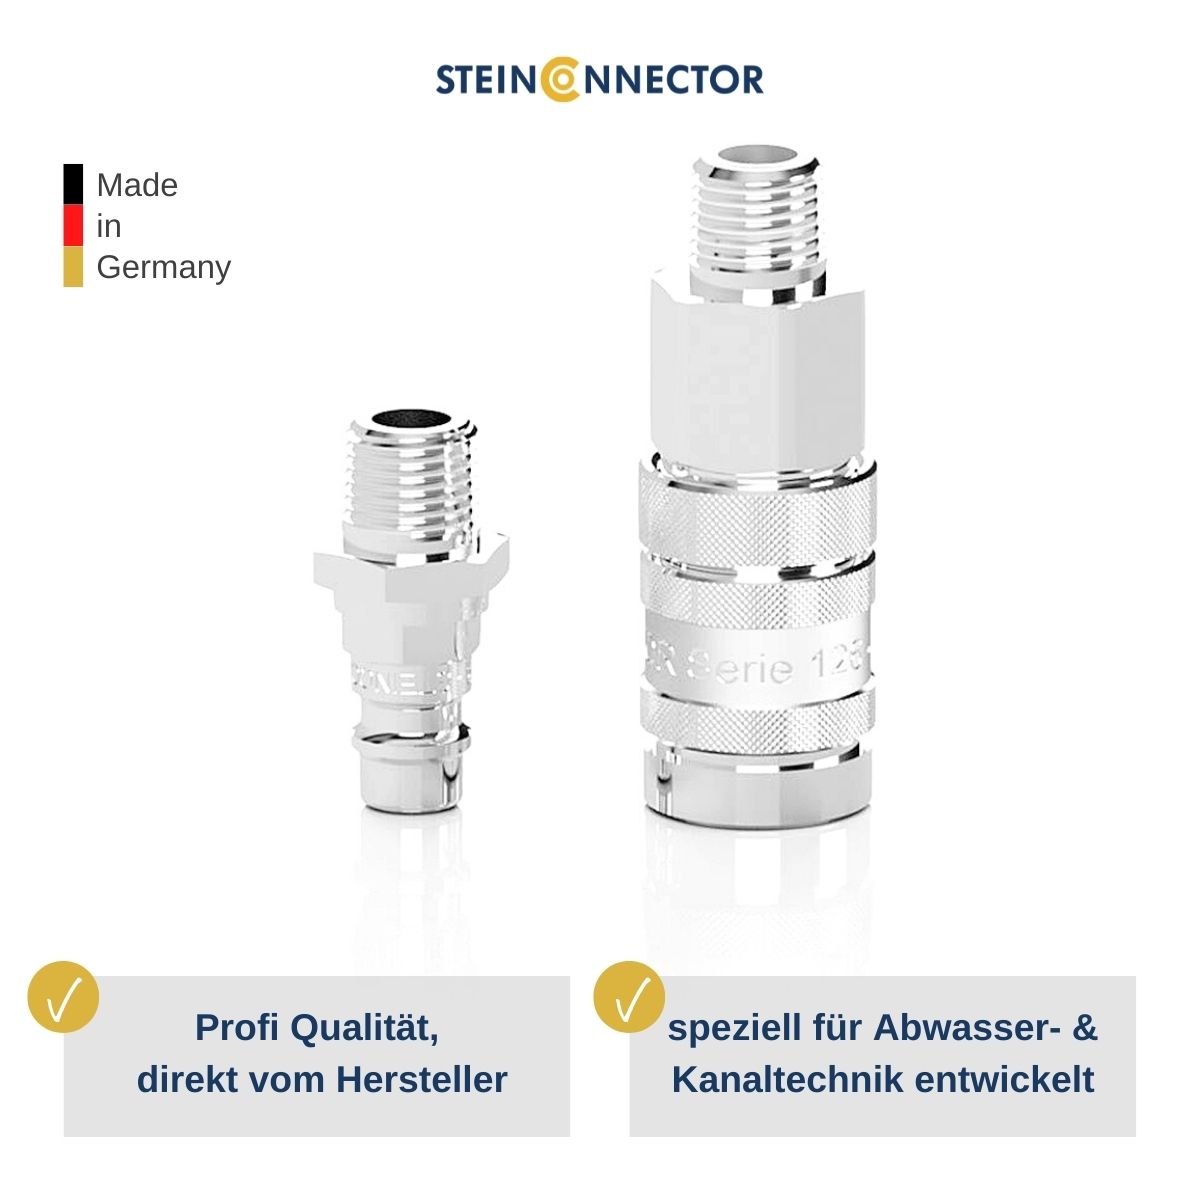 Steinconnector Profi Druckluft-, Sicherheits-, Schnell- und Luftkupplungen für die Kanal- und Abwassertechnik - Erstklassige Fittings in Industrie Qualität - Kaufen Sie direkt beim deutschen Hersteller